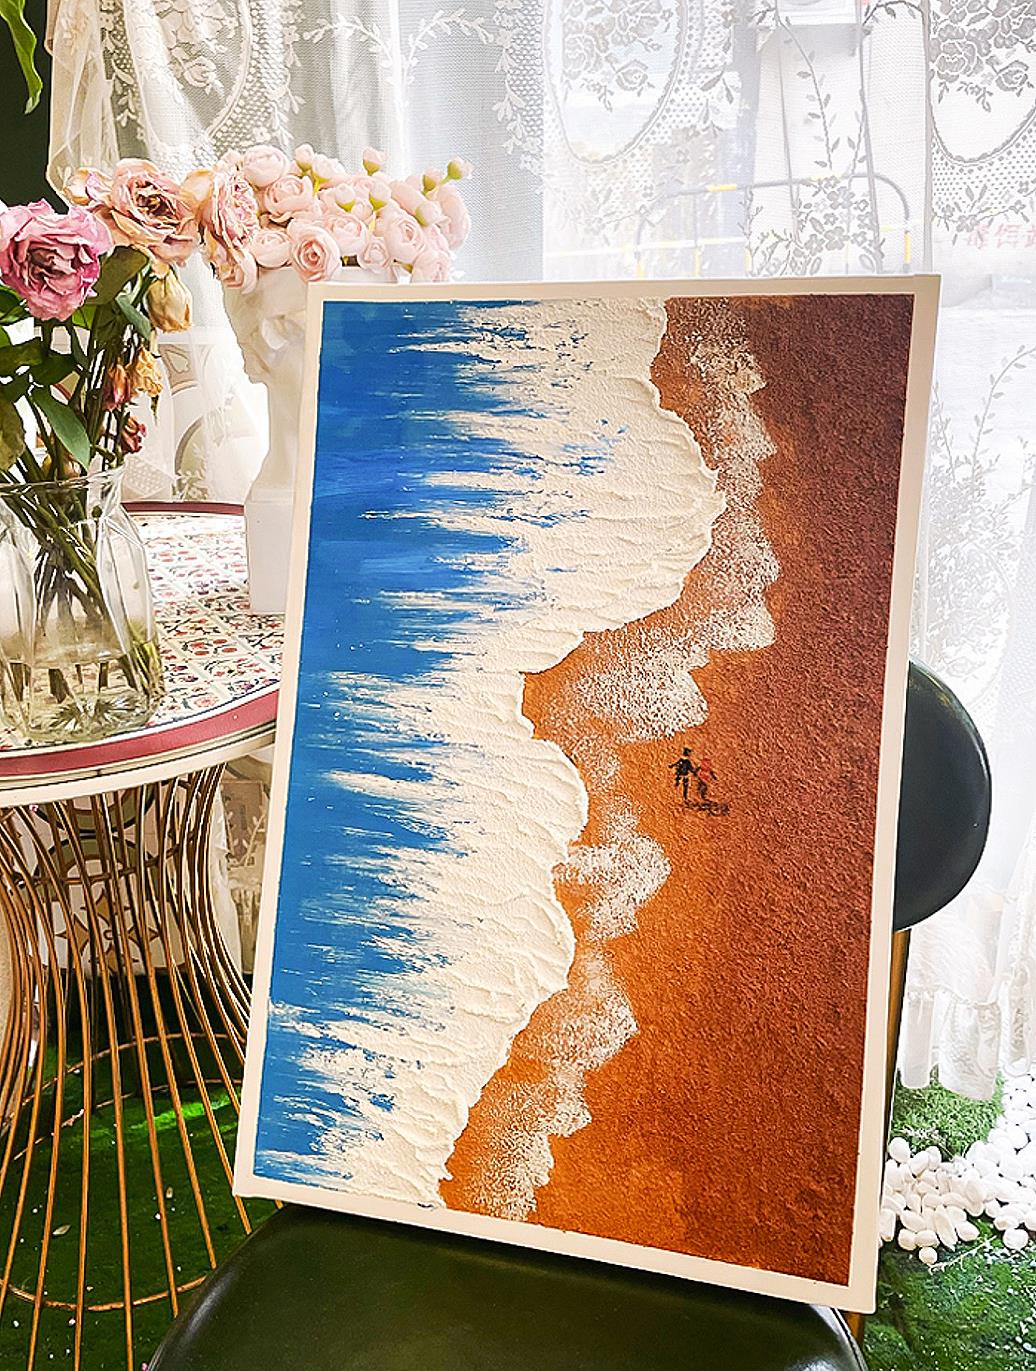 波砂子供 27 ビーチアート壁装飾海岸油絵